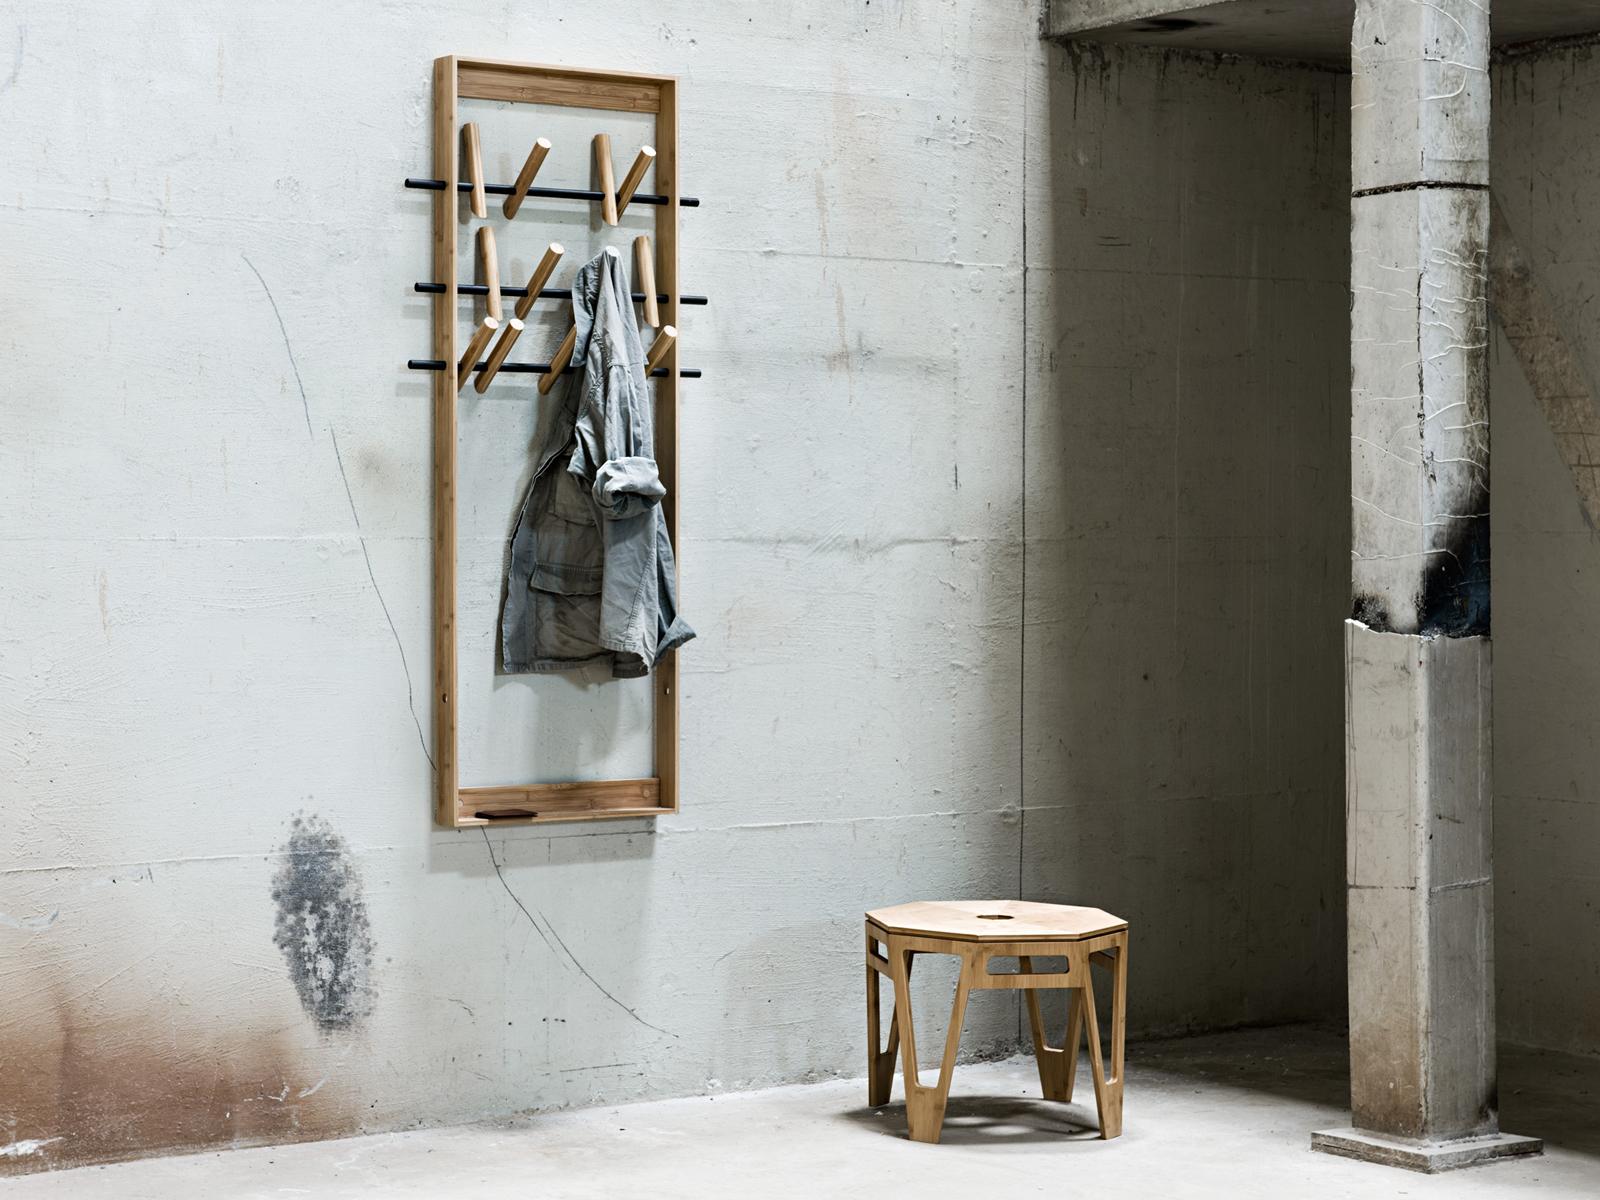 Garderobe COAT FRAME mit Beistelltisch OCTAGON #bambus #beistelltisch #garderobe #garderobenhaken ©We Do Wood